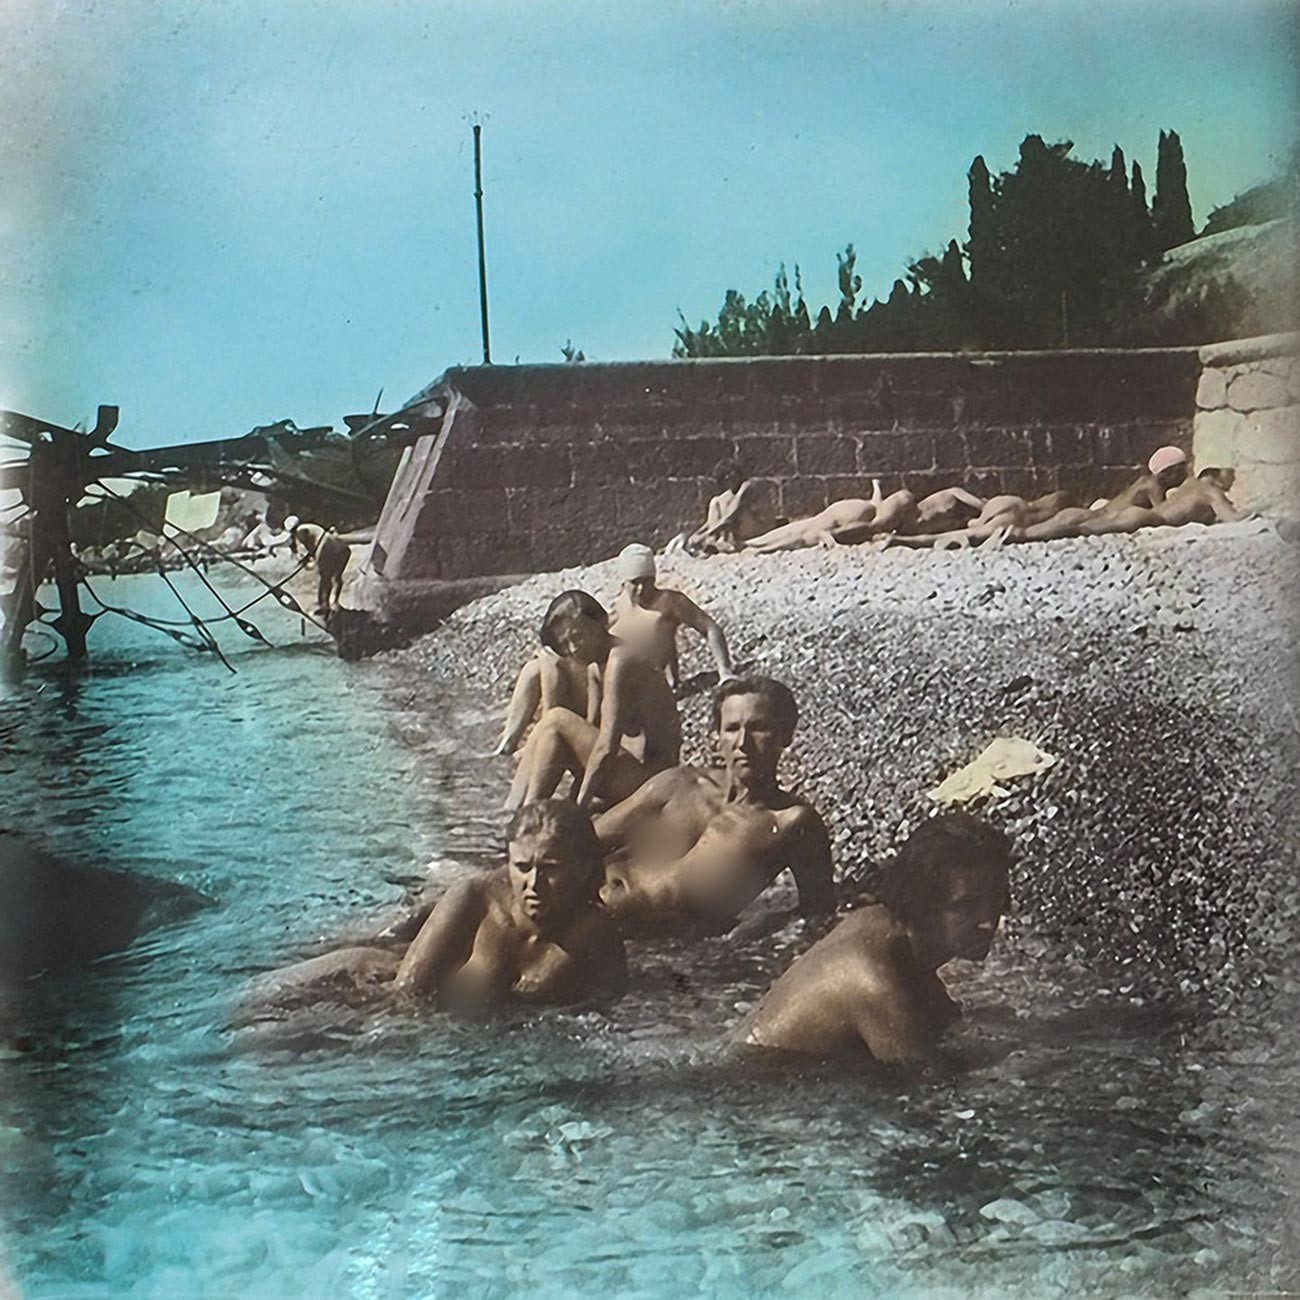 Plaža na Krimu, 1931.

